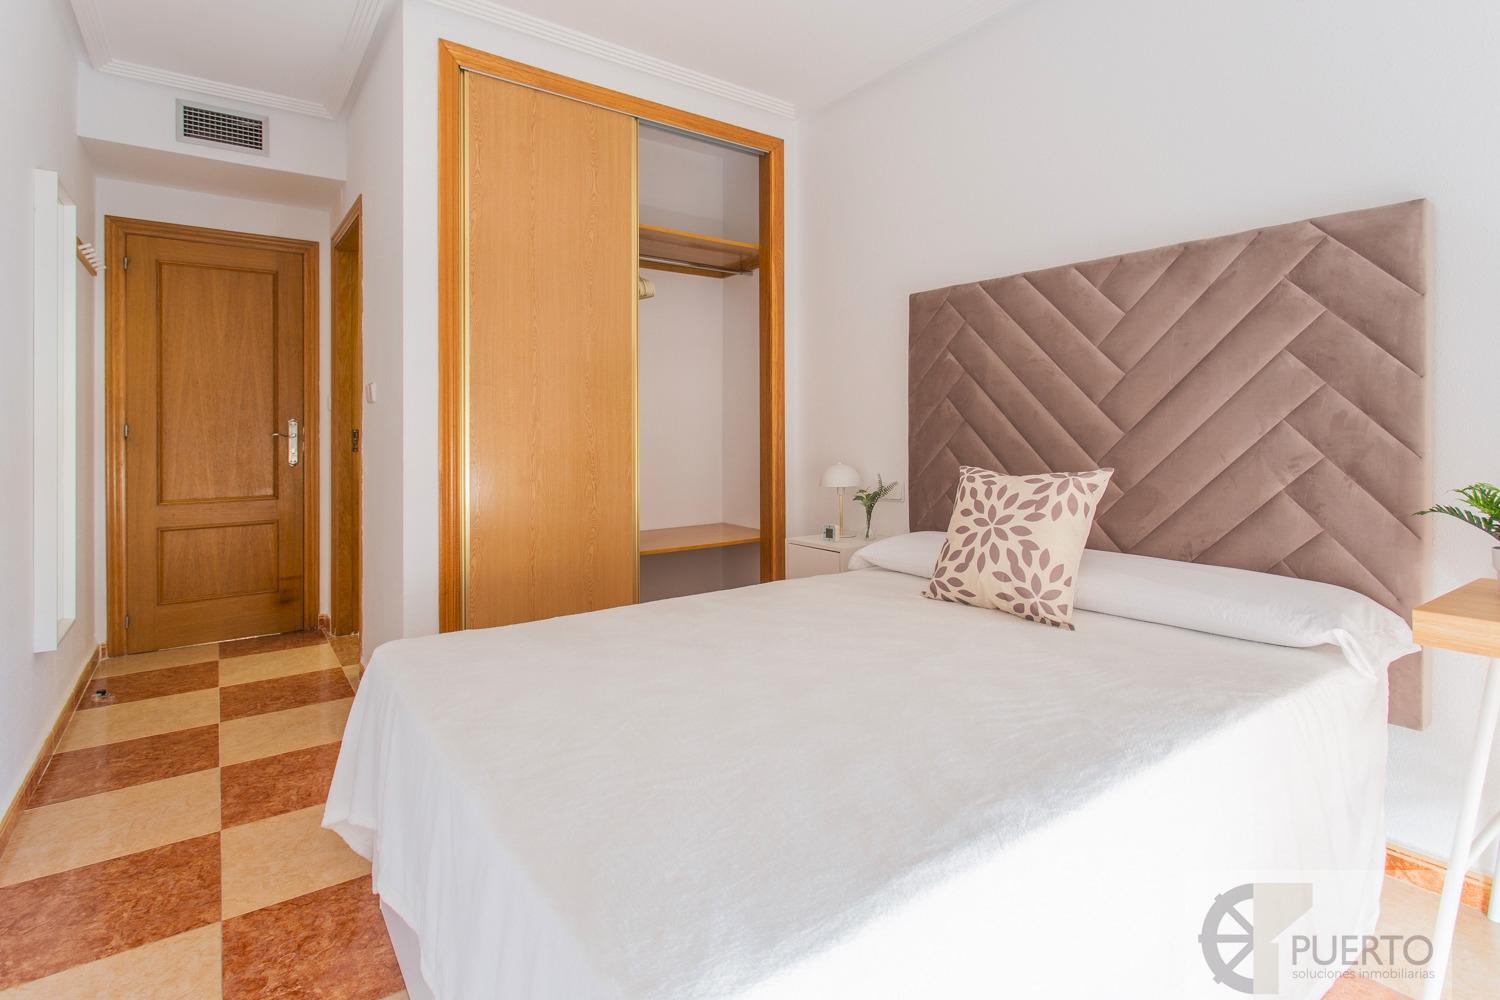 Alquiler de habitación en Cartagena